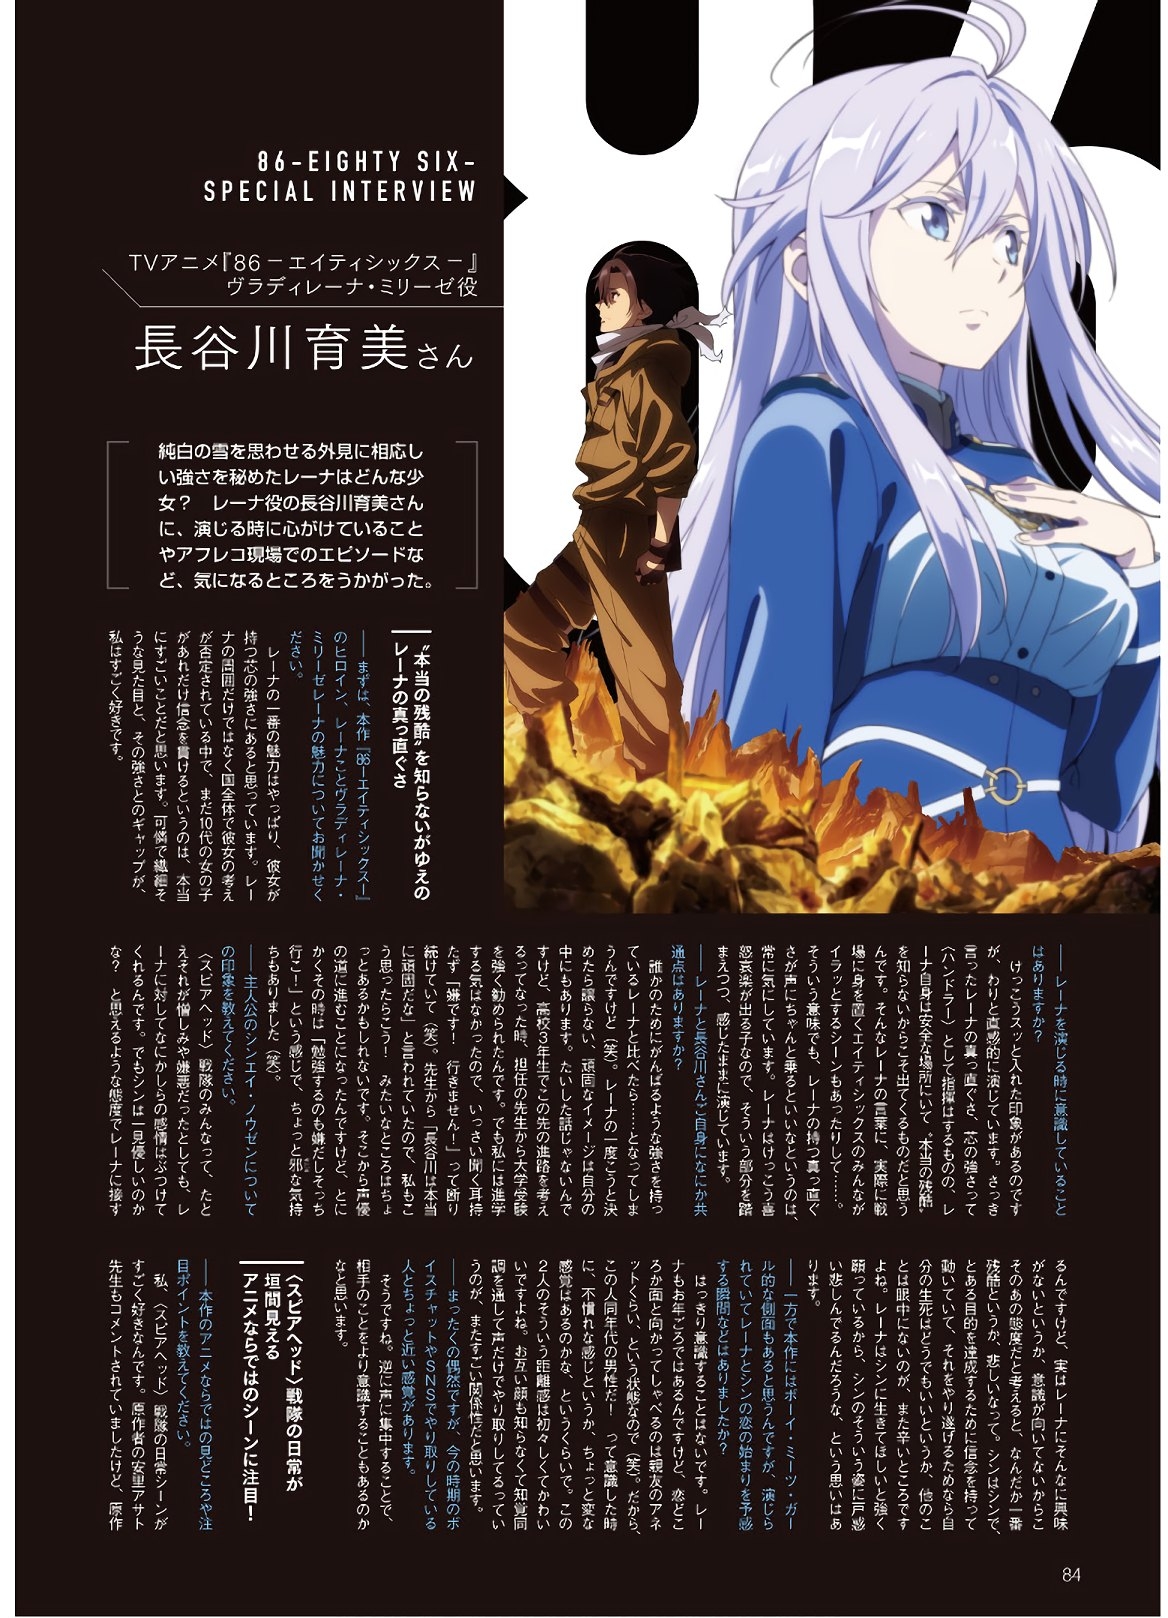 Dengeki G's Magazine #286 - May 2021 81